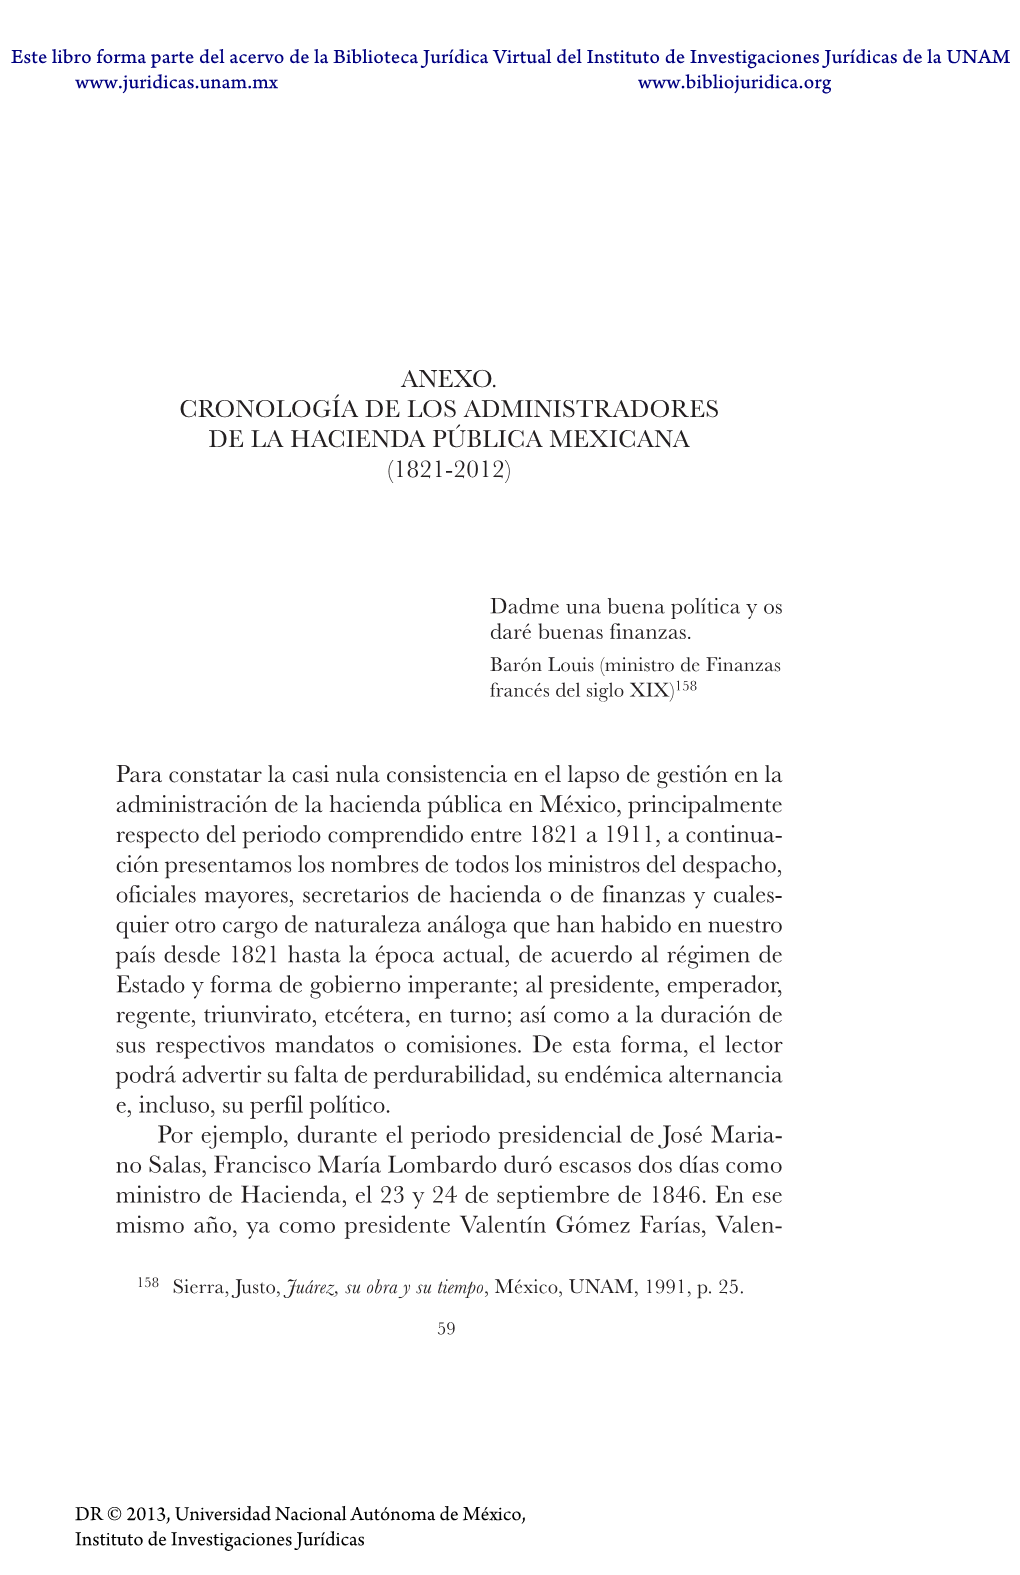 Anexo. Cronología De Los Administradores De La Hacienda Pública Mexicana (1821-2012)